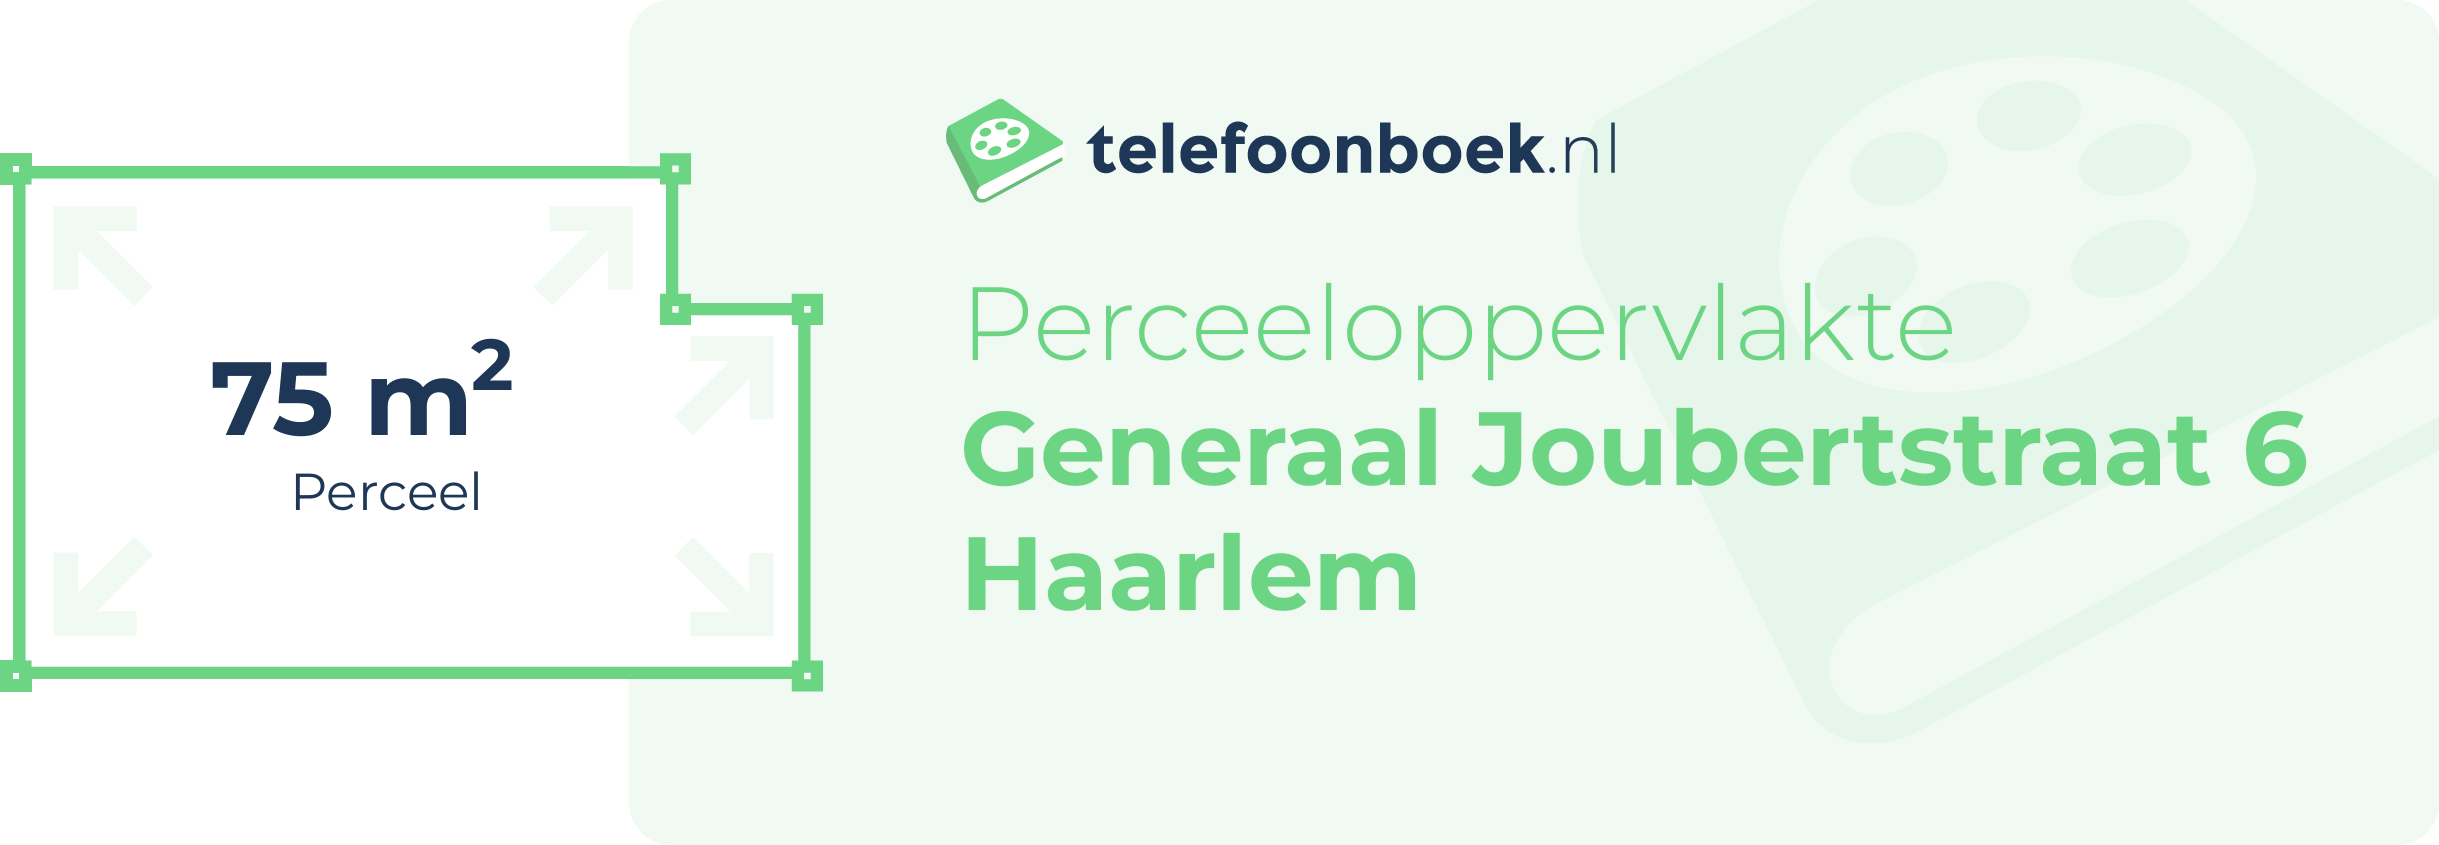 Perceeloppervlakte Generaal Joubertstraat 6 Haarlem